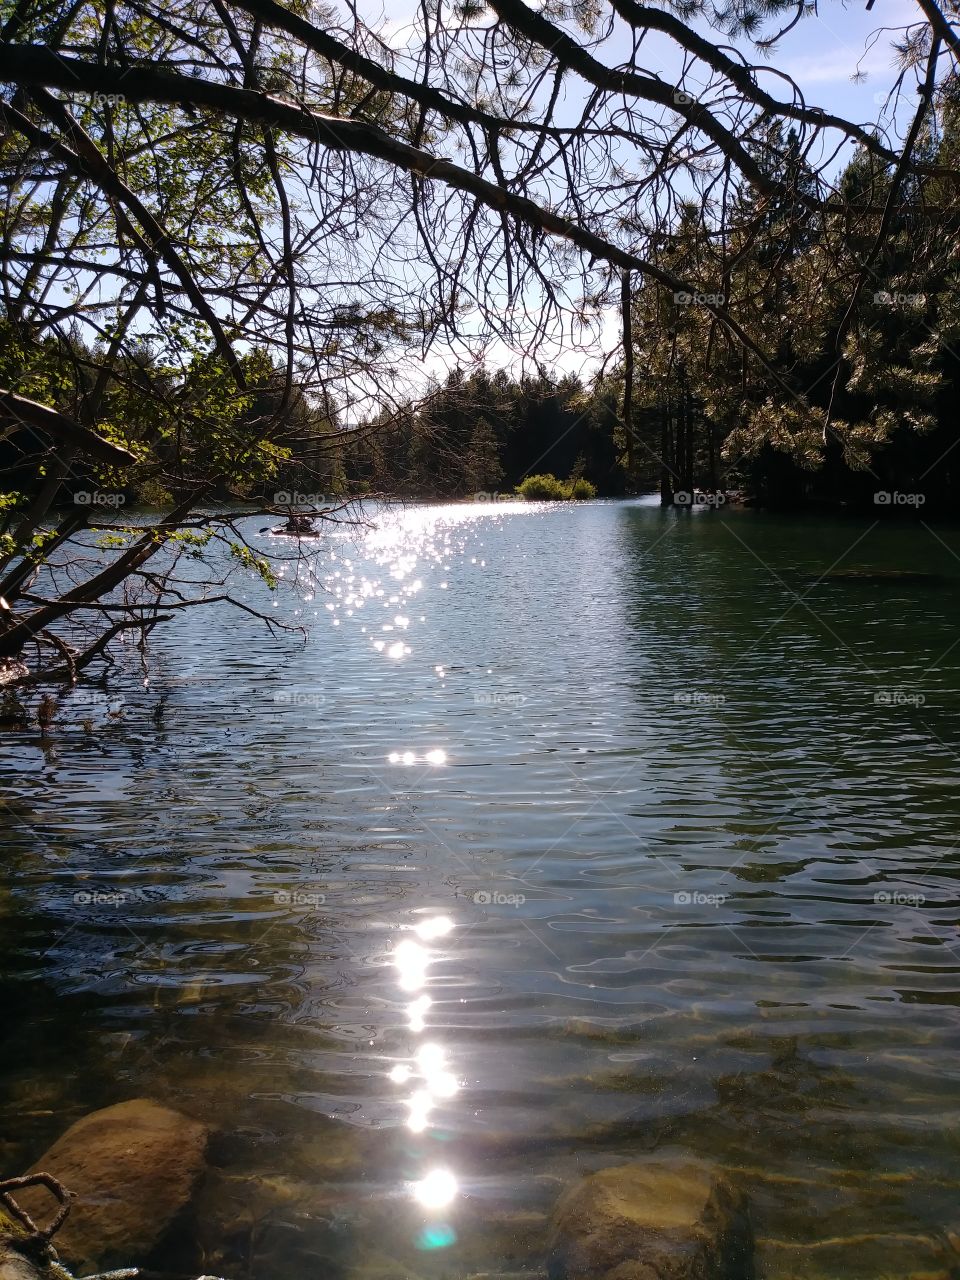 Donner lake